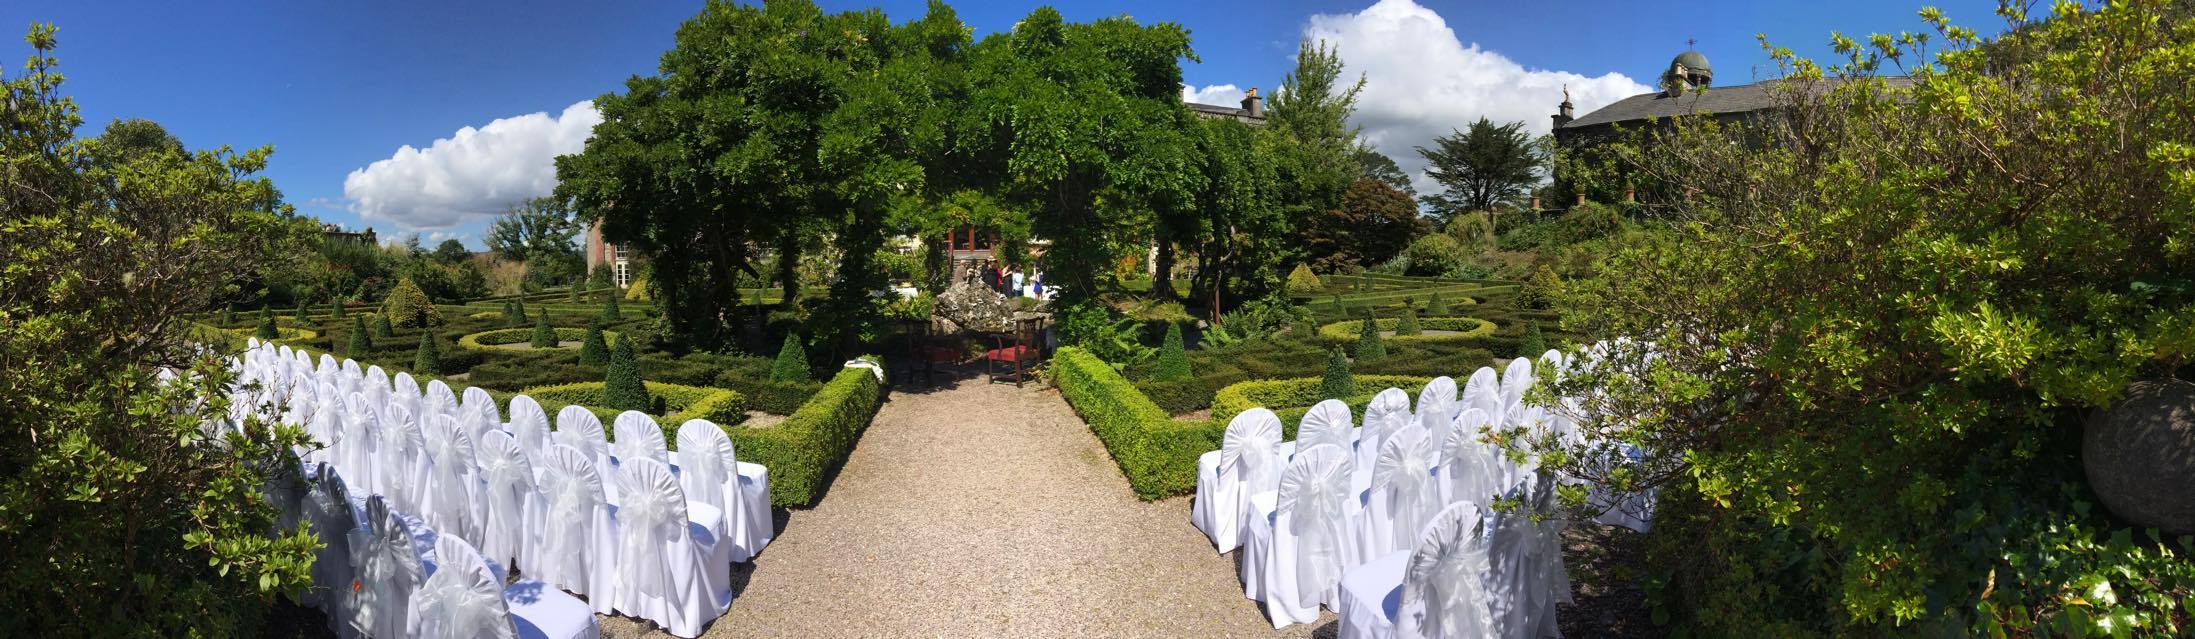 wedding-by-wisteria